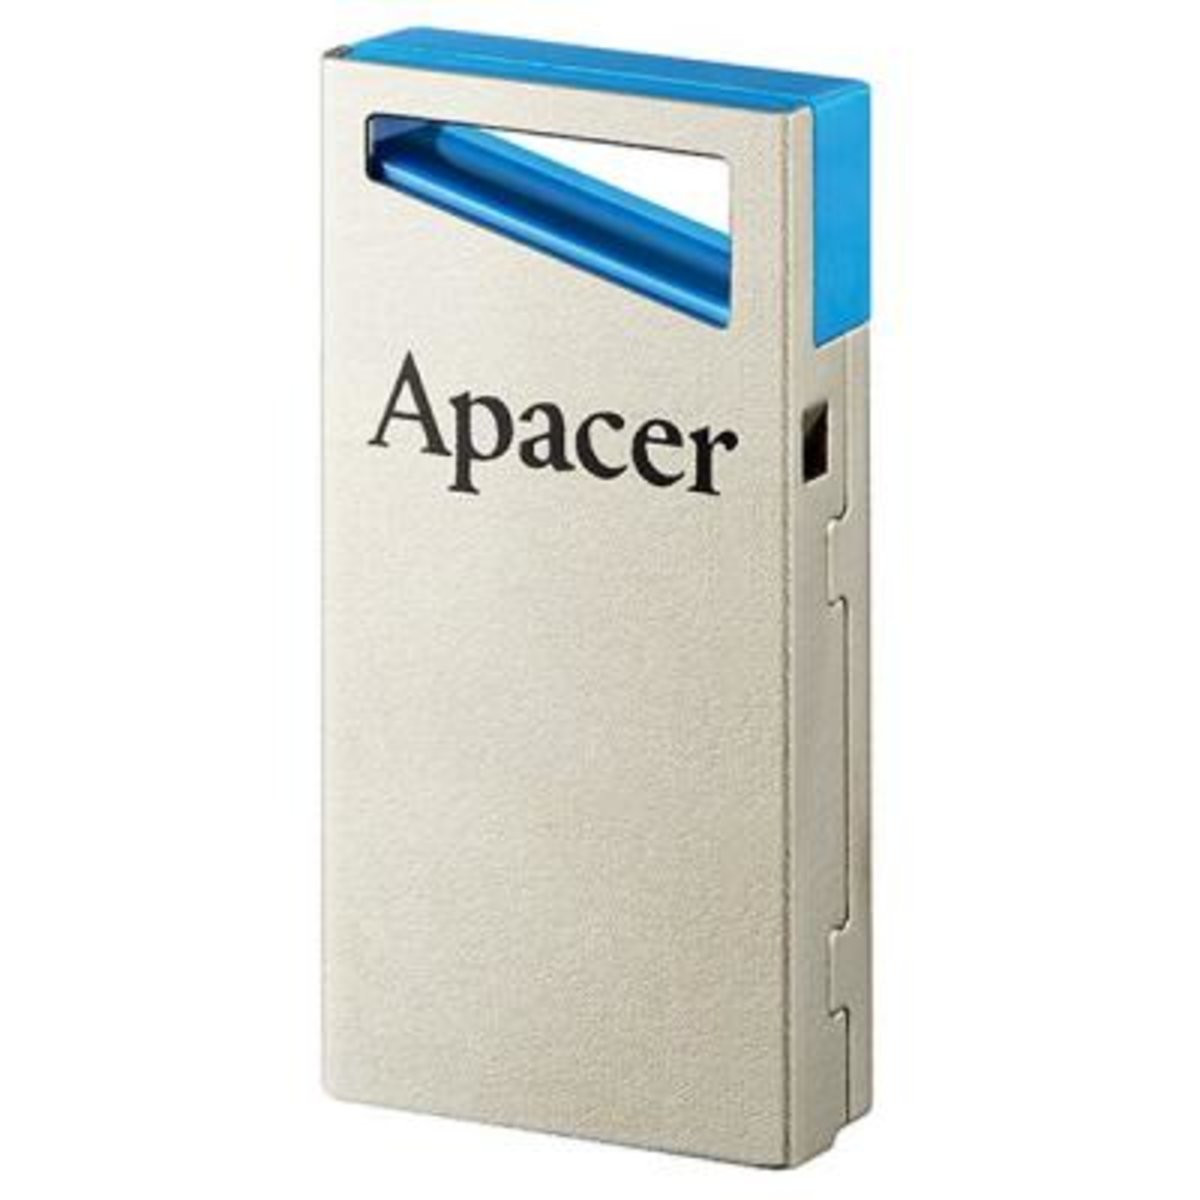 Flash Apacer USB 3.0 AH155 64Gb blue - 1